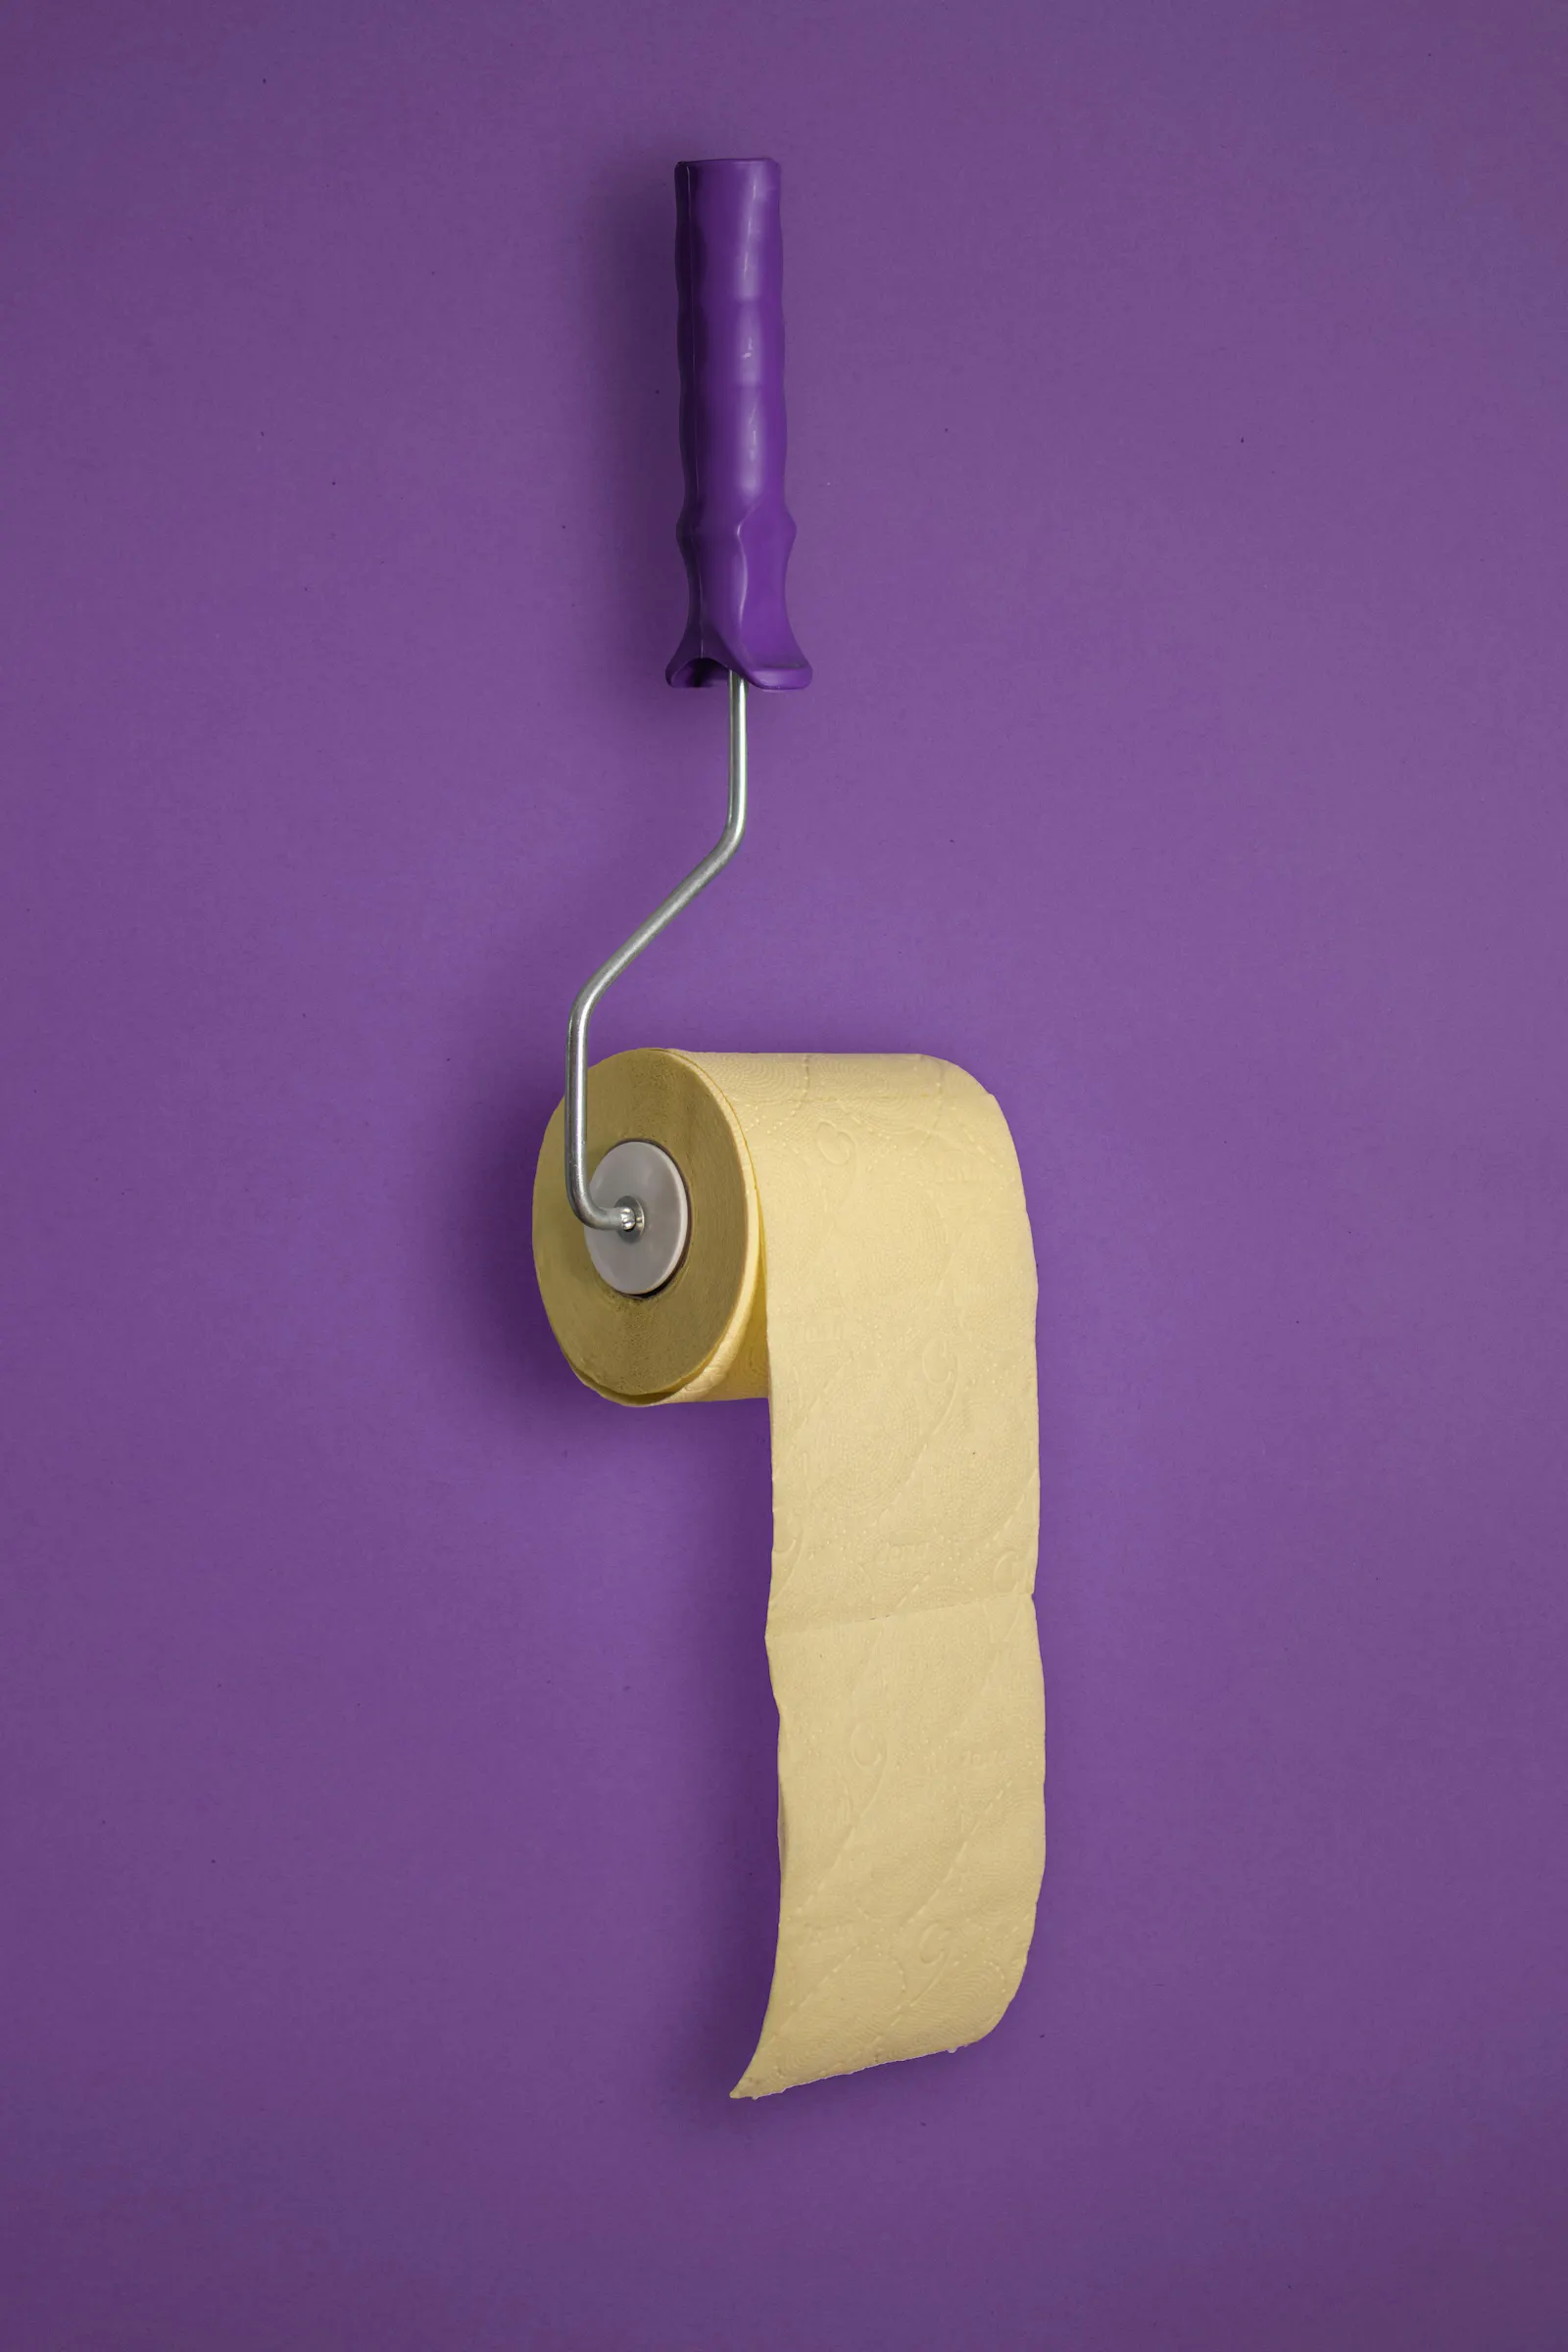 Lila Hintergrund. Davor eine lilafarbene Malrolle, an der eine Rolle gelbes Toilettenpapier hängt.